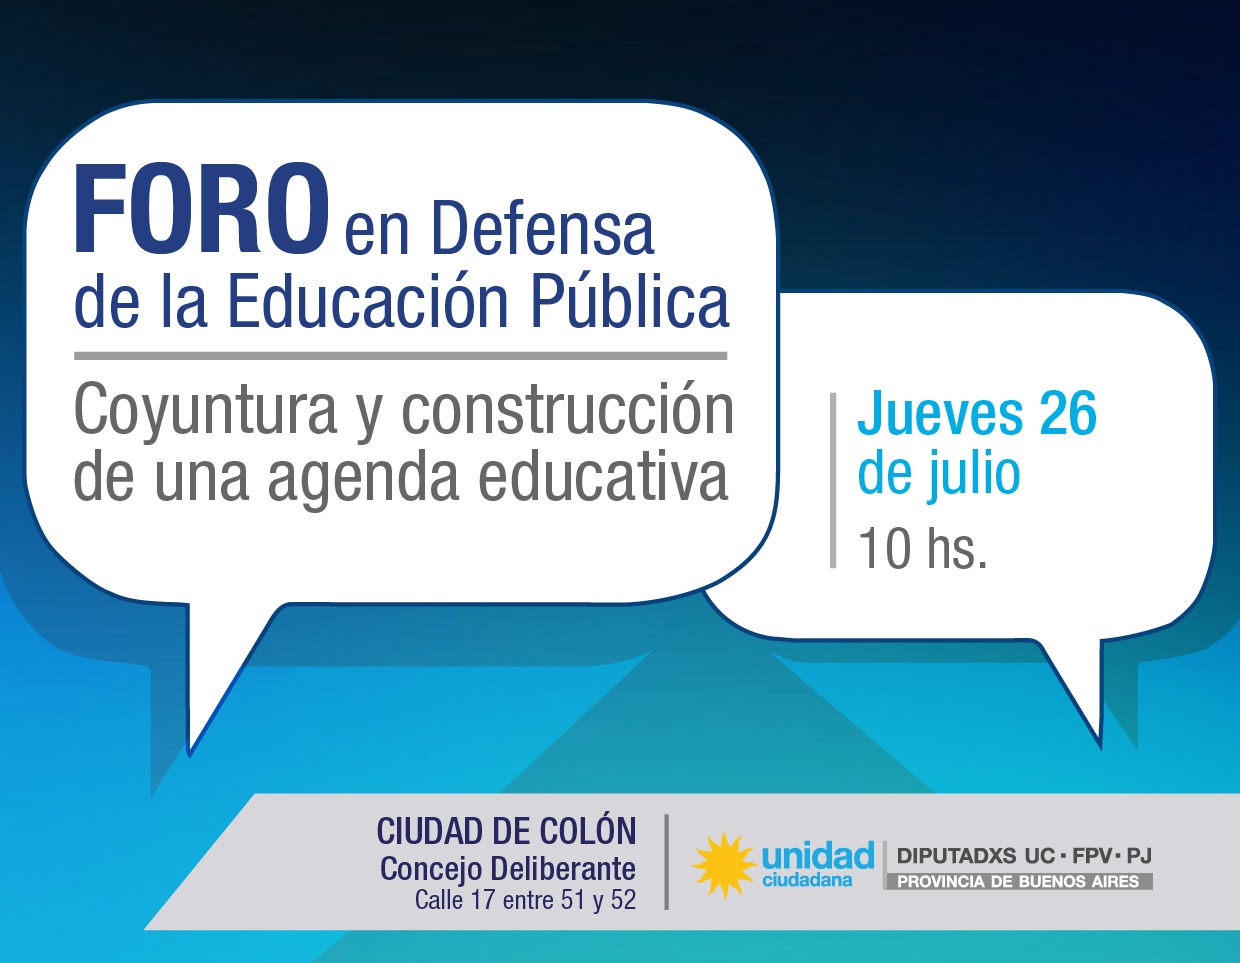 El Foro en Defensa de la Educación Pública tendrá lugar en Colón